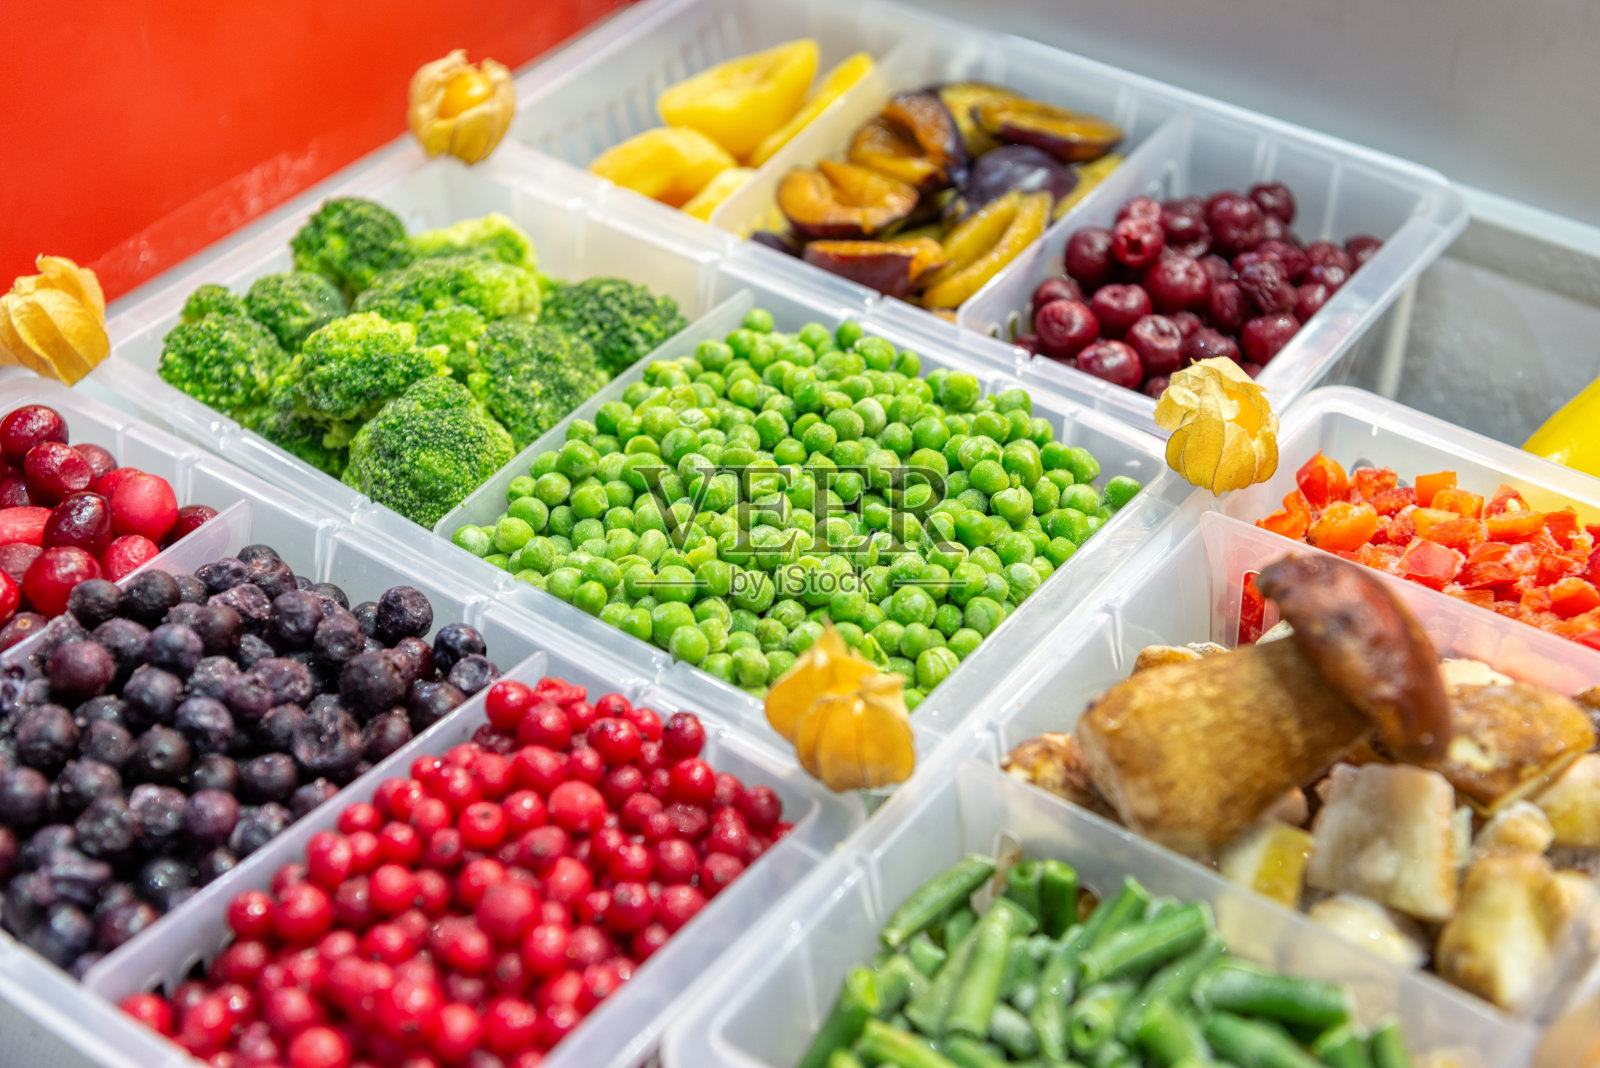 冷冻水果和蔬菜。浆果，蘑菇，豆类等等。产品被倒入塑料盒中。在框架的中心是绿色的豌豆照片摄影图片